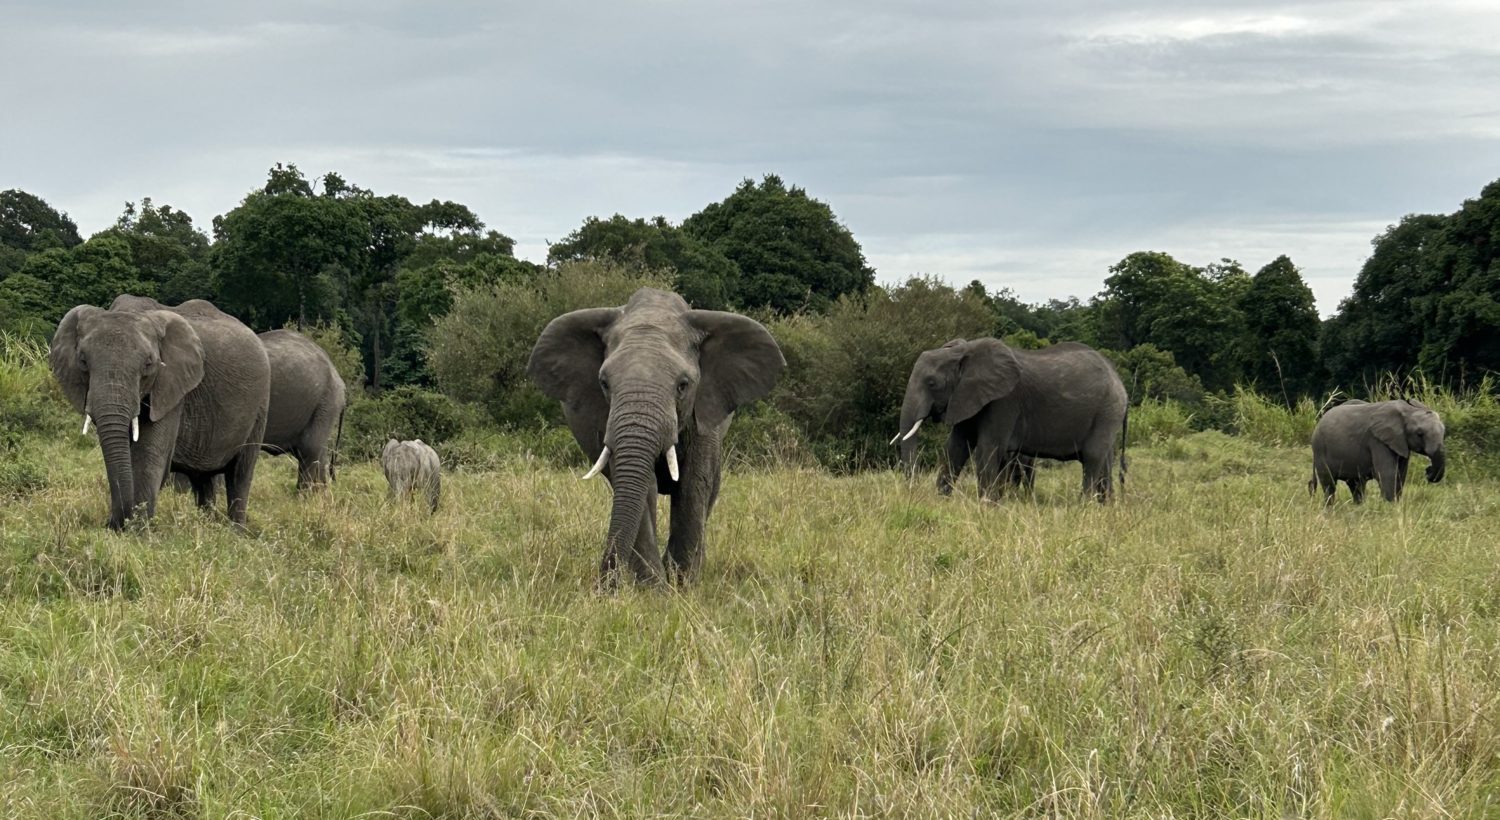 A herd of elephants walking across a lush green field